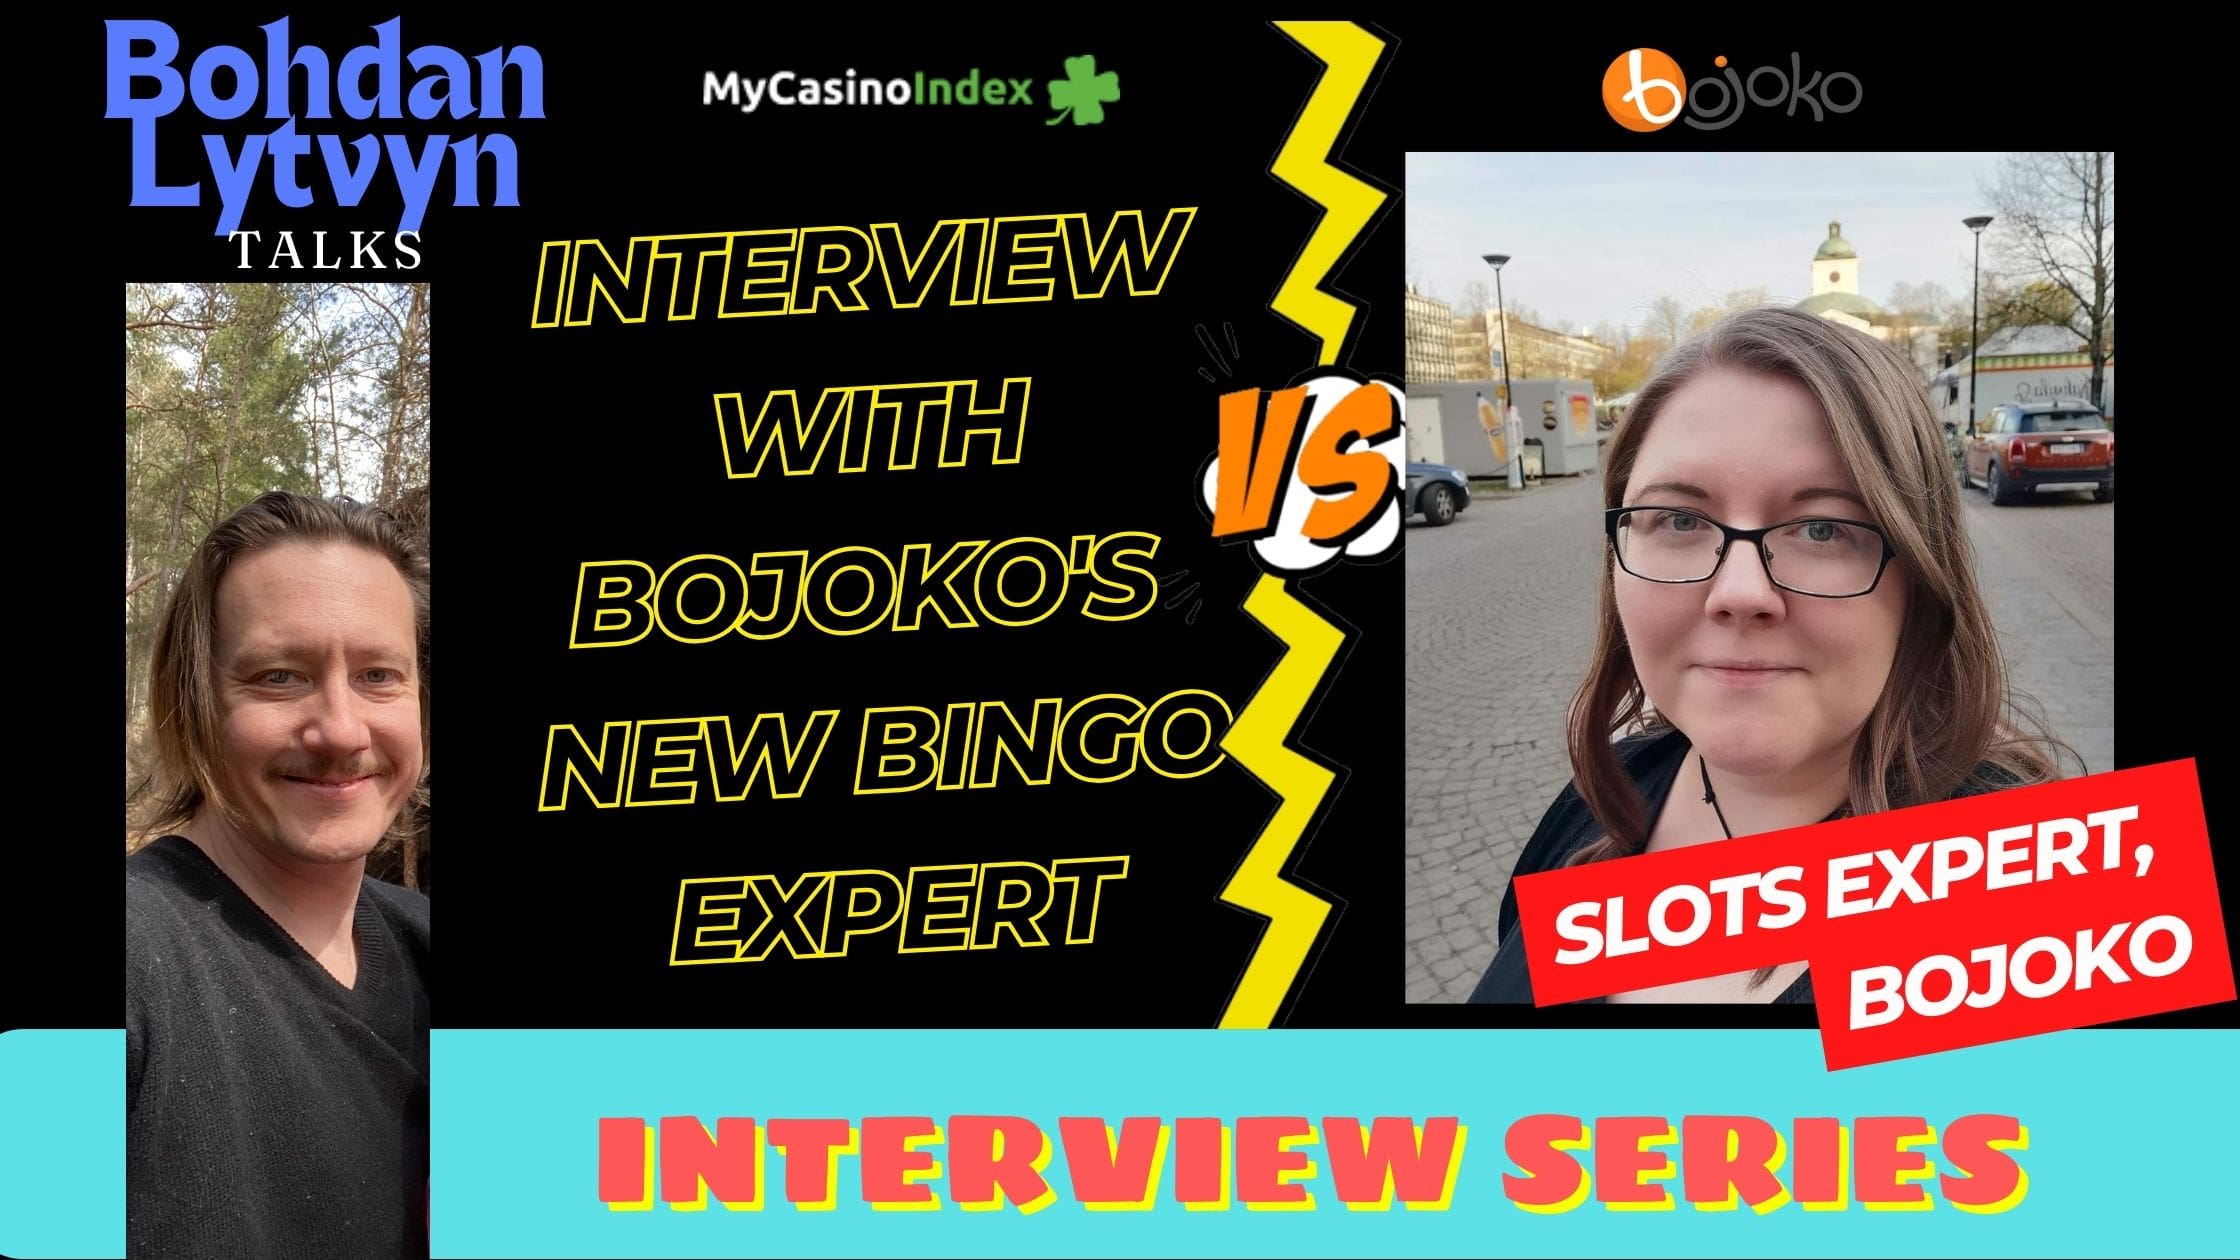 Interview with Bojoko's New Bingo Expert